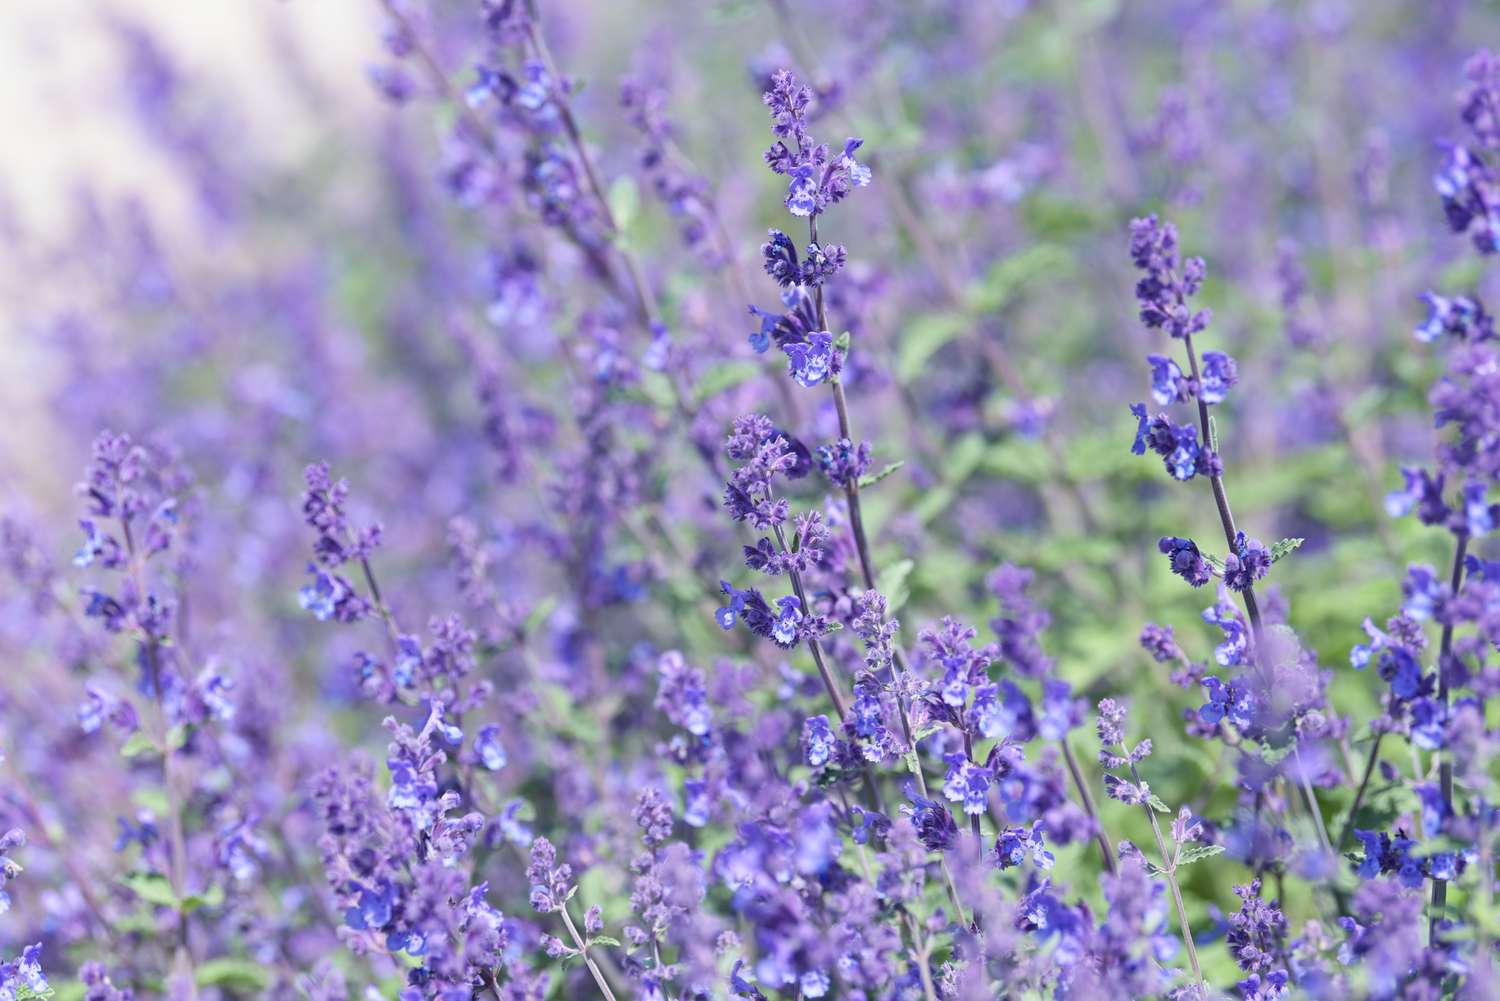 Katzenminze mit kleinen violett-blauen Blüten an violetten Stielen